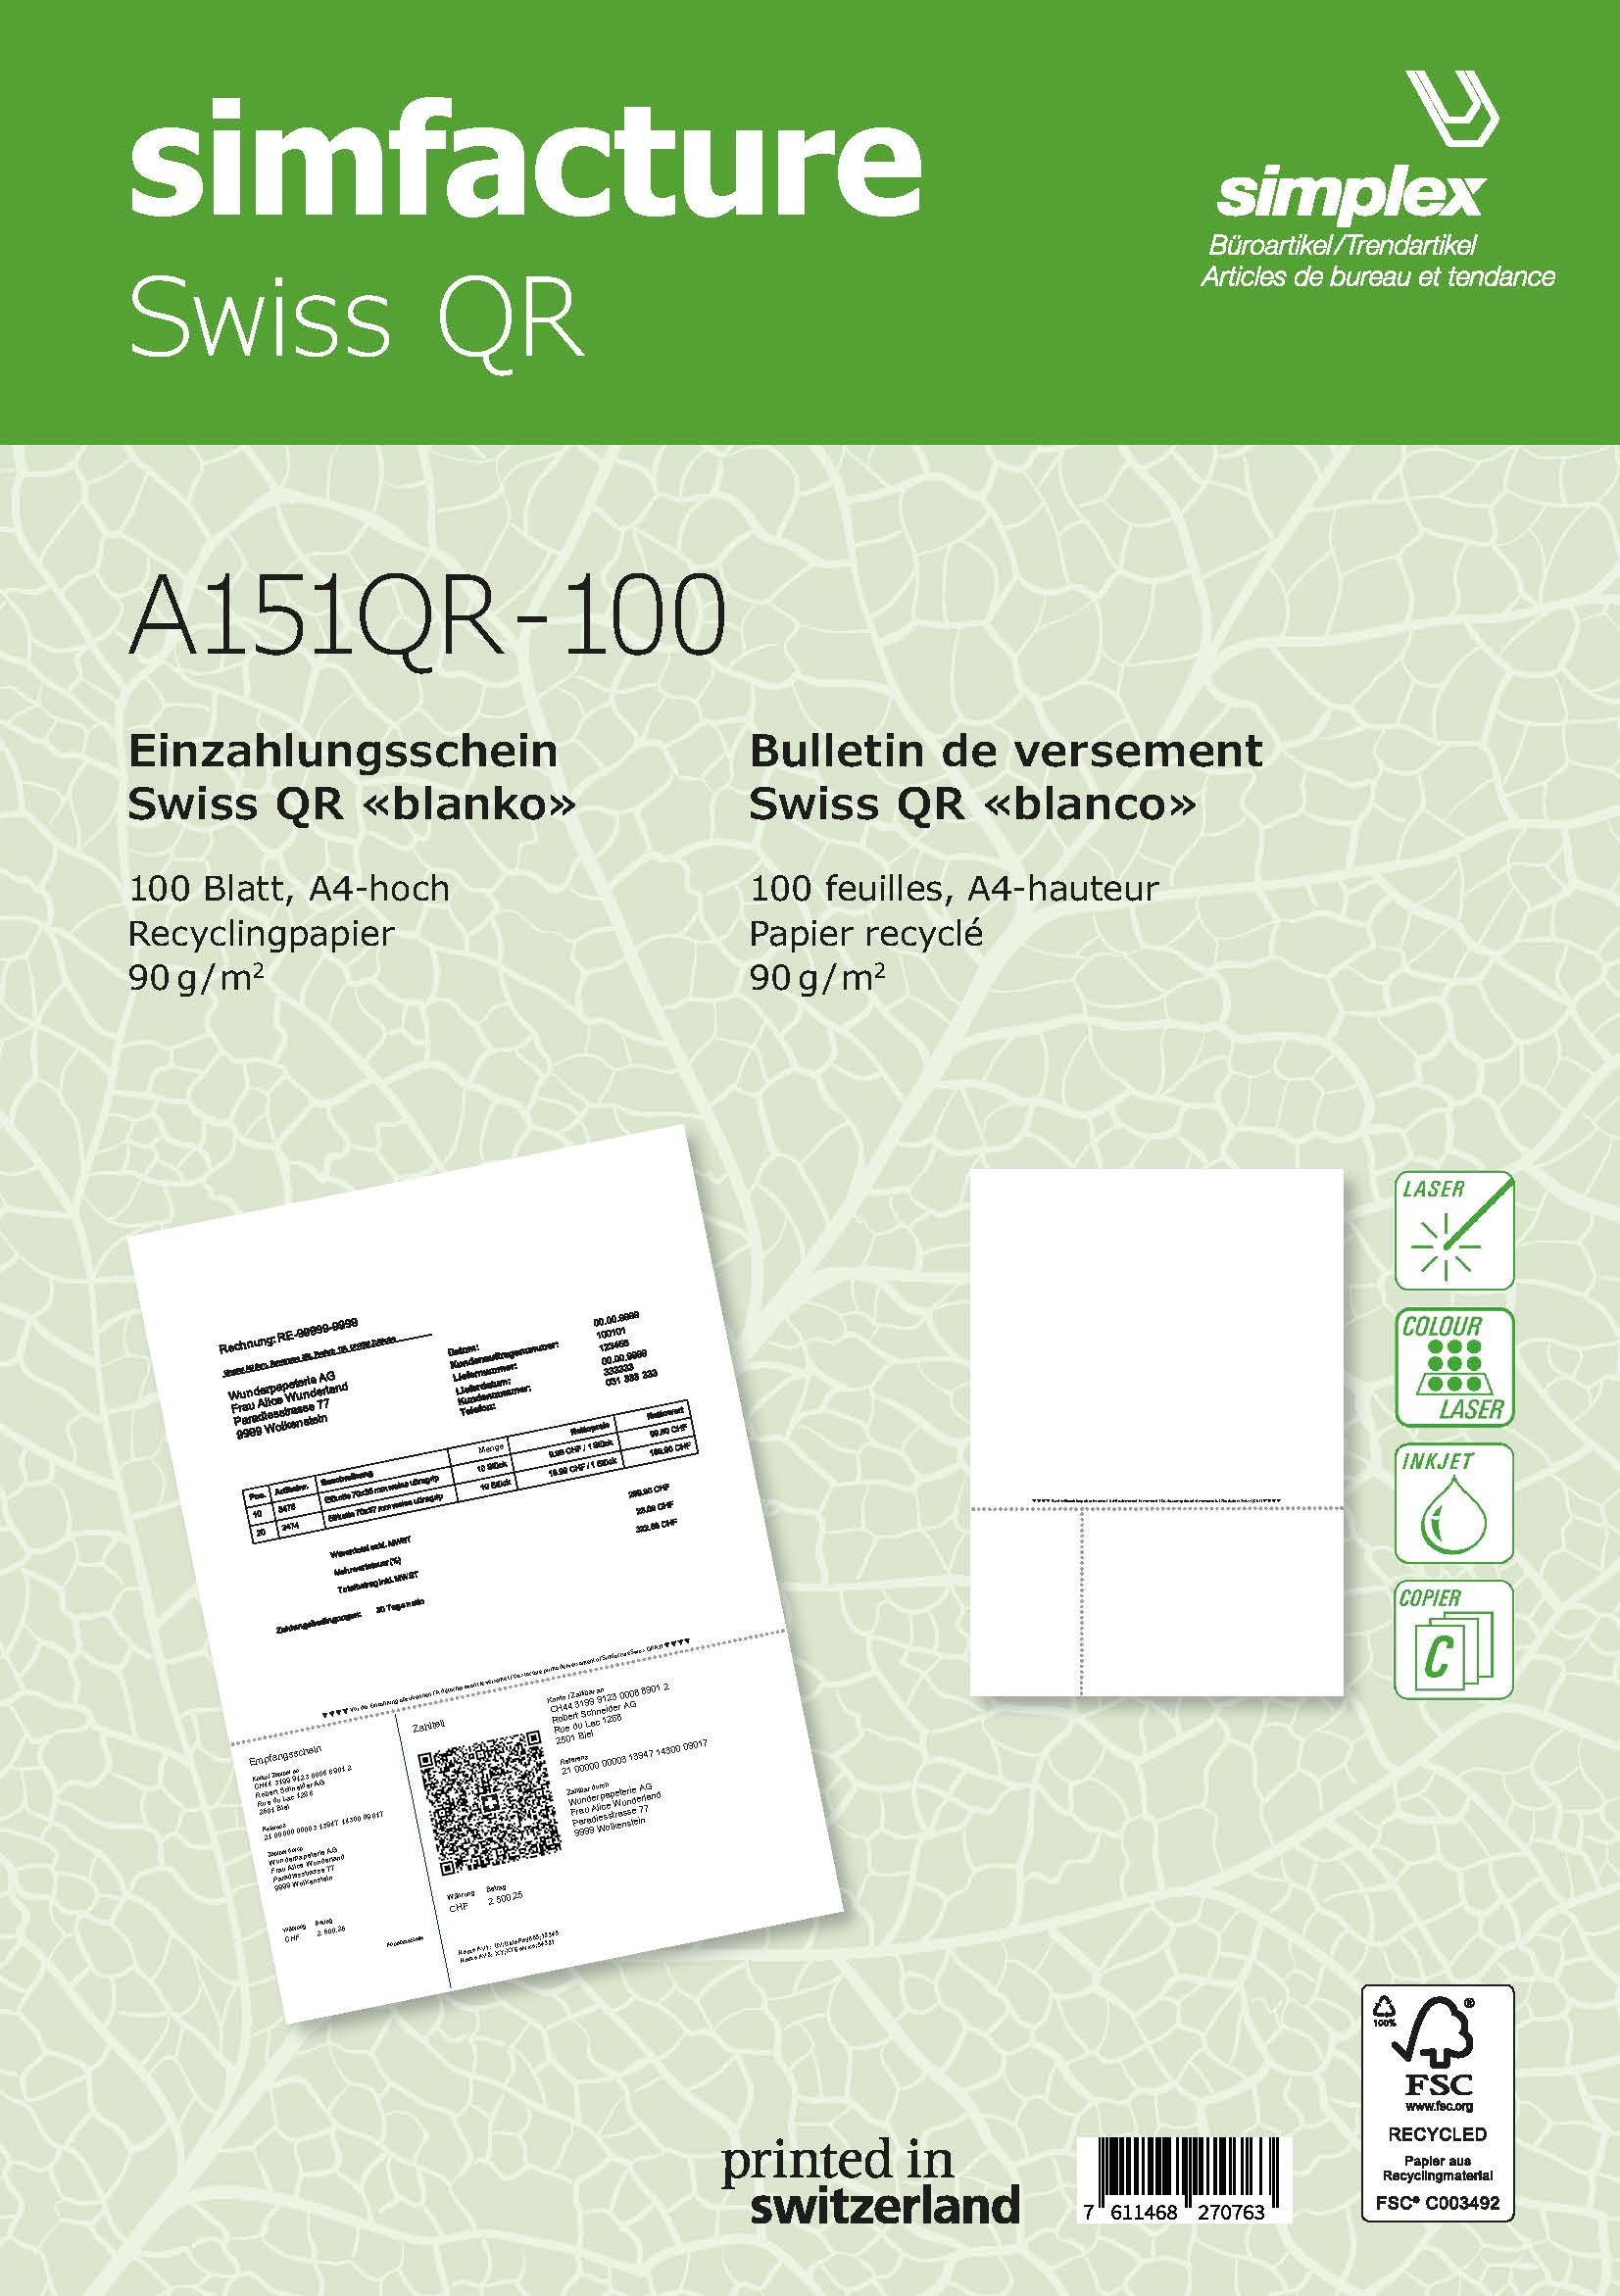 SIMPLEX Simfacture Swiss QR Recycl. A4 A151QR-100 universel, 90g 100 flls.